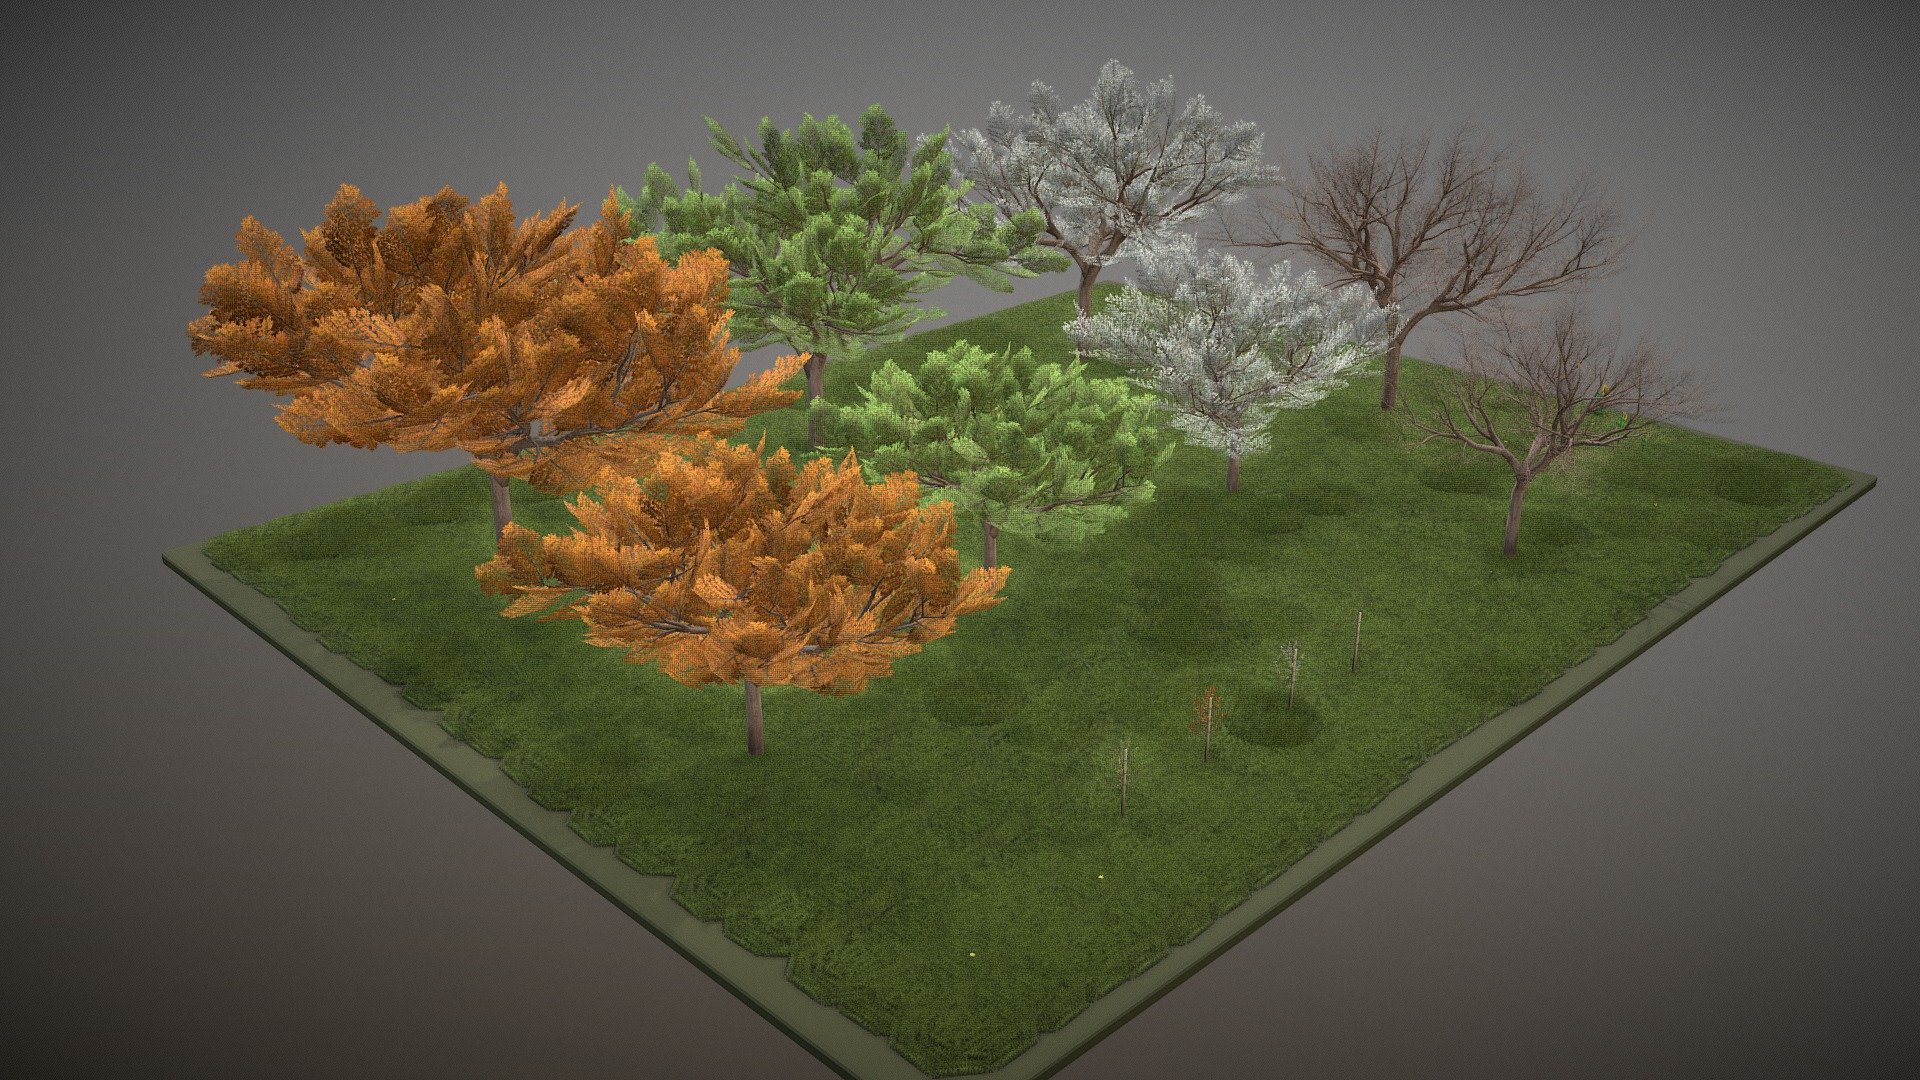 Baumtyp „Kirsche“ in verschiedenen Größen und Jahreszeiten.

Aus dem VIS-All Baum Module 4 



 



Modelliert und texturiert mit Blender.





 

 - Cherry Tree Seasons - Kirschbaum Jahrezeiten - Buy Royalty Free 3D model by VIS-All-3D (@VIS-All) 3d model